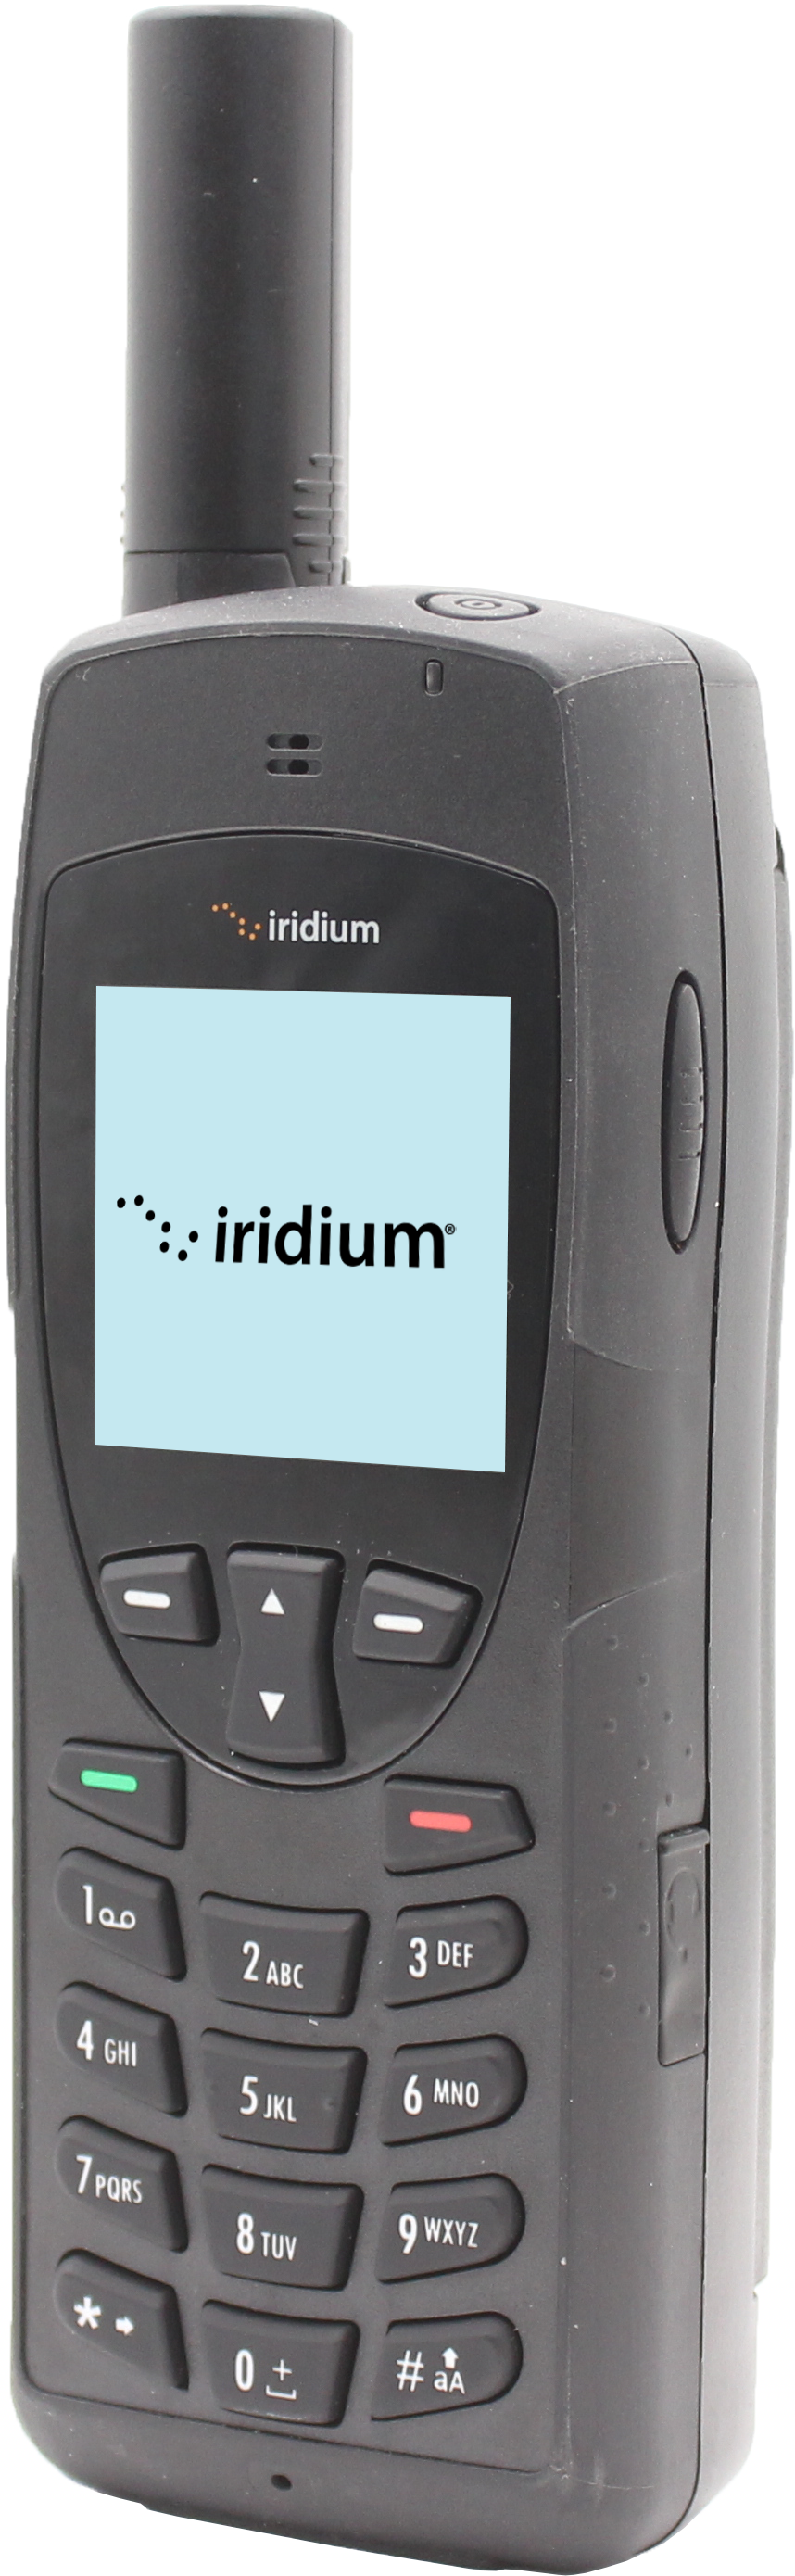 Iridium 9555 Product Image